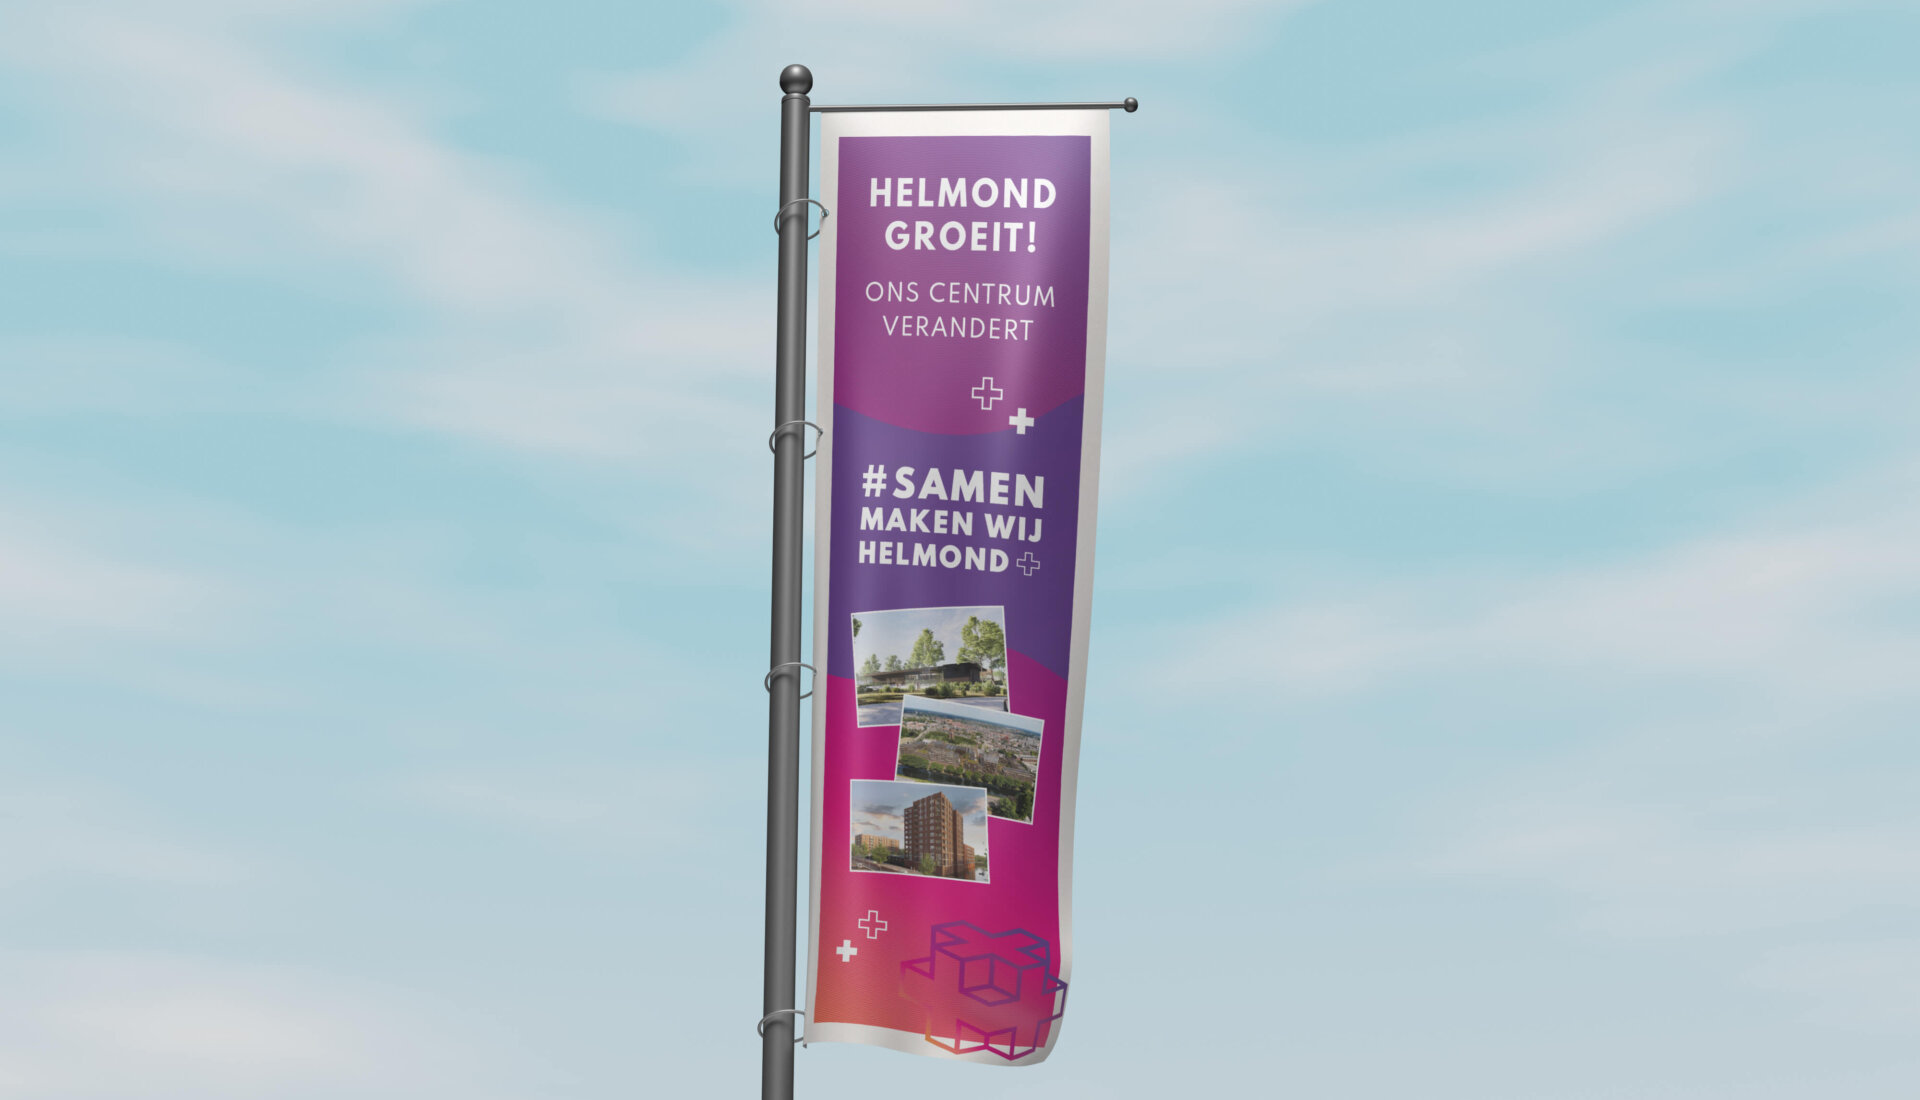 Baniervlag voor Samen maken we Helmond Event met boodschap 'Helmond groeit'